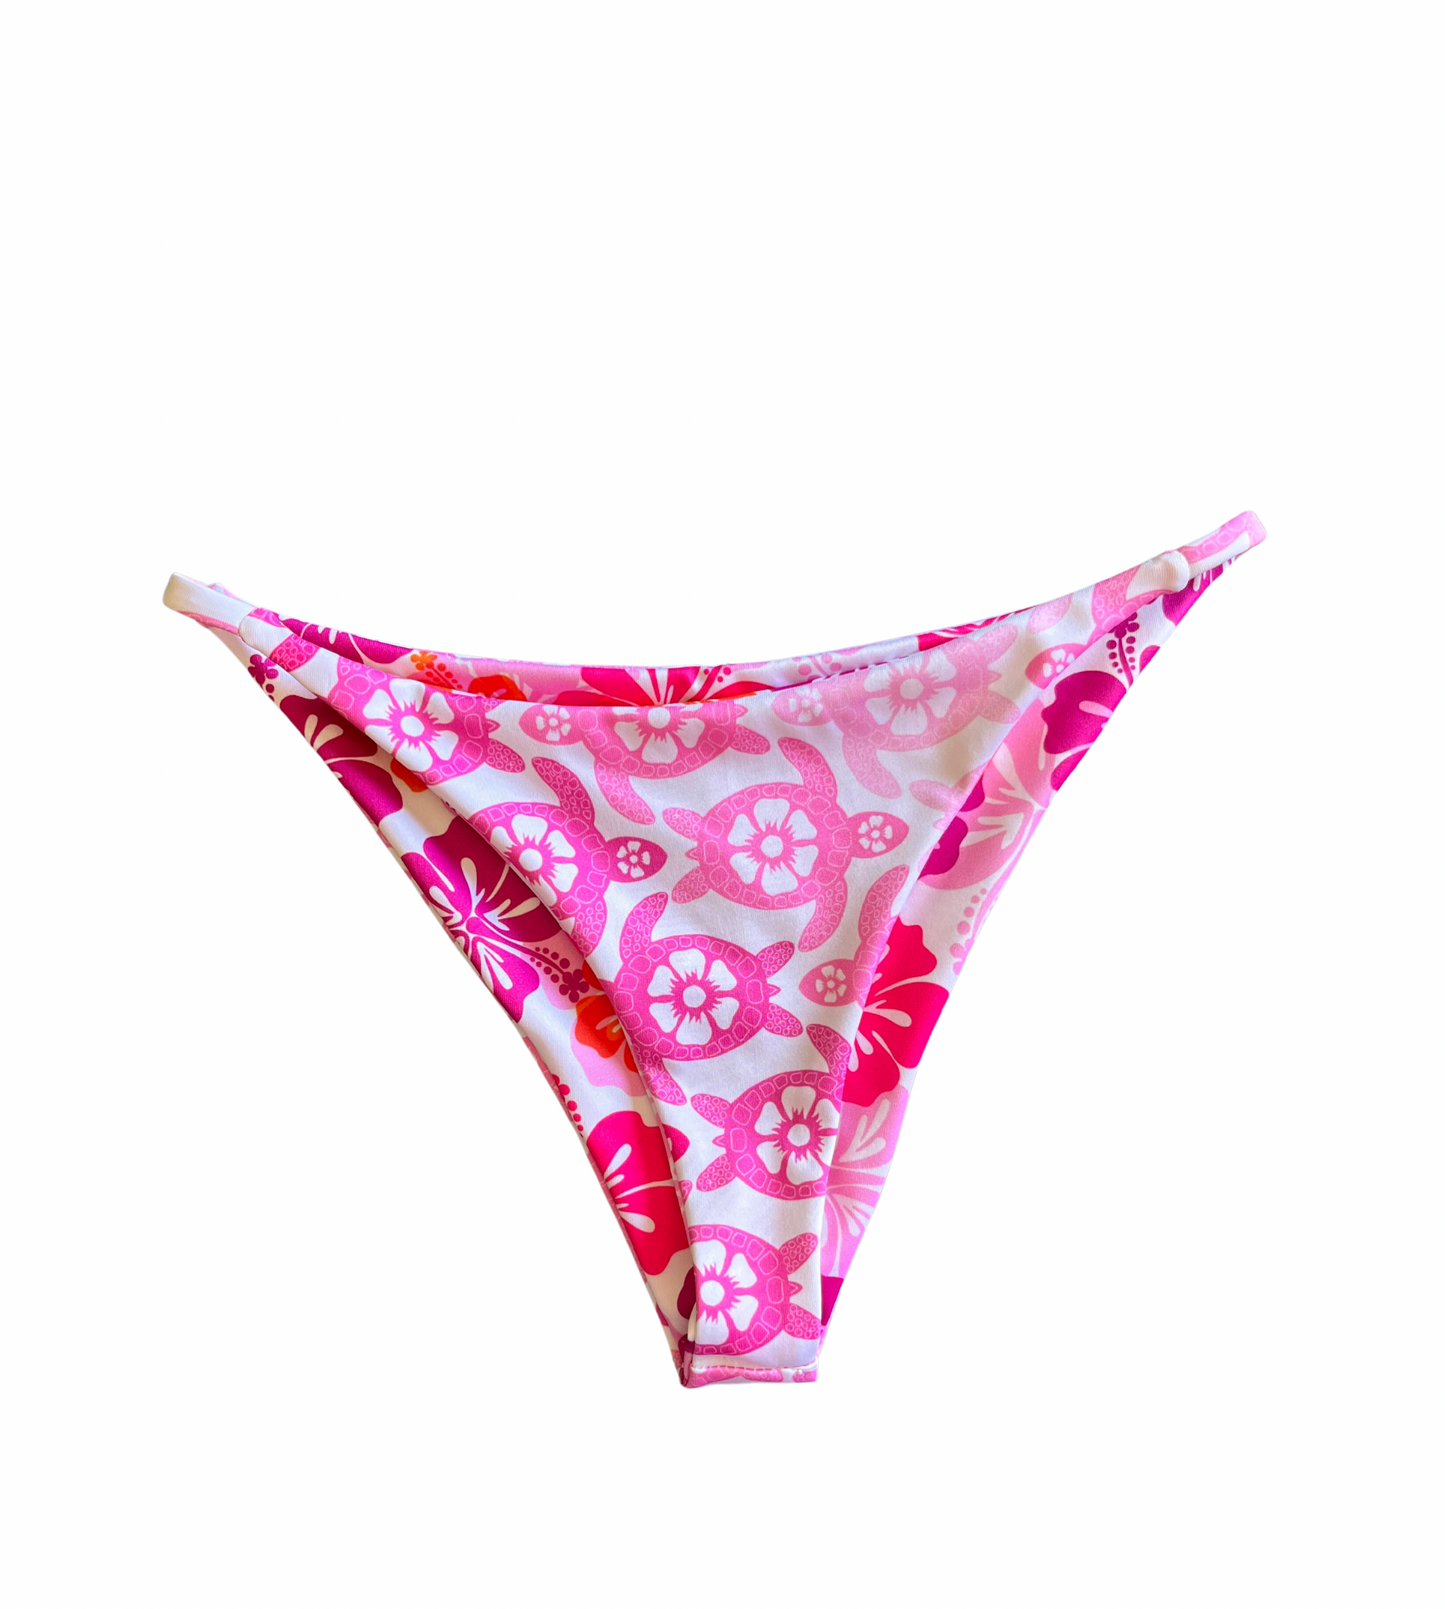 Siesta Key bottom (Medium) - Sunset Hibiscus & Pink Crush